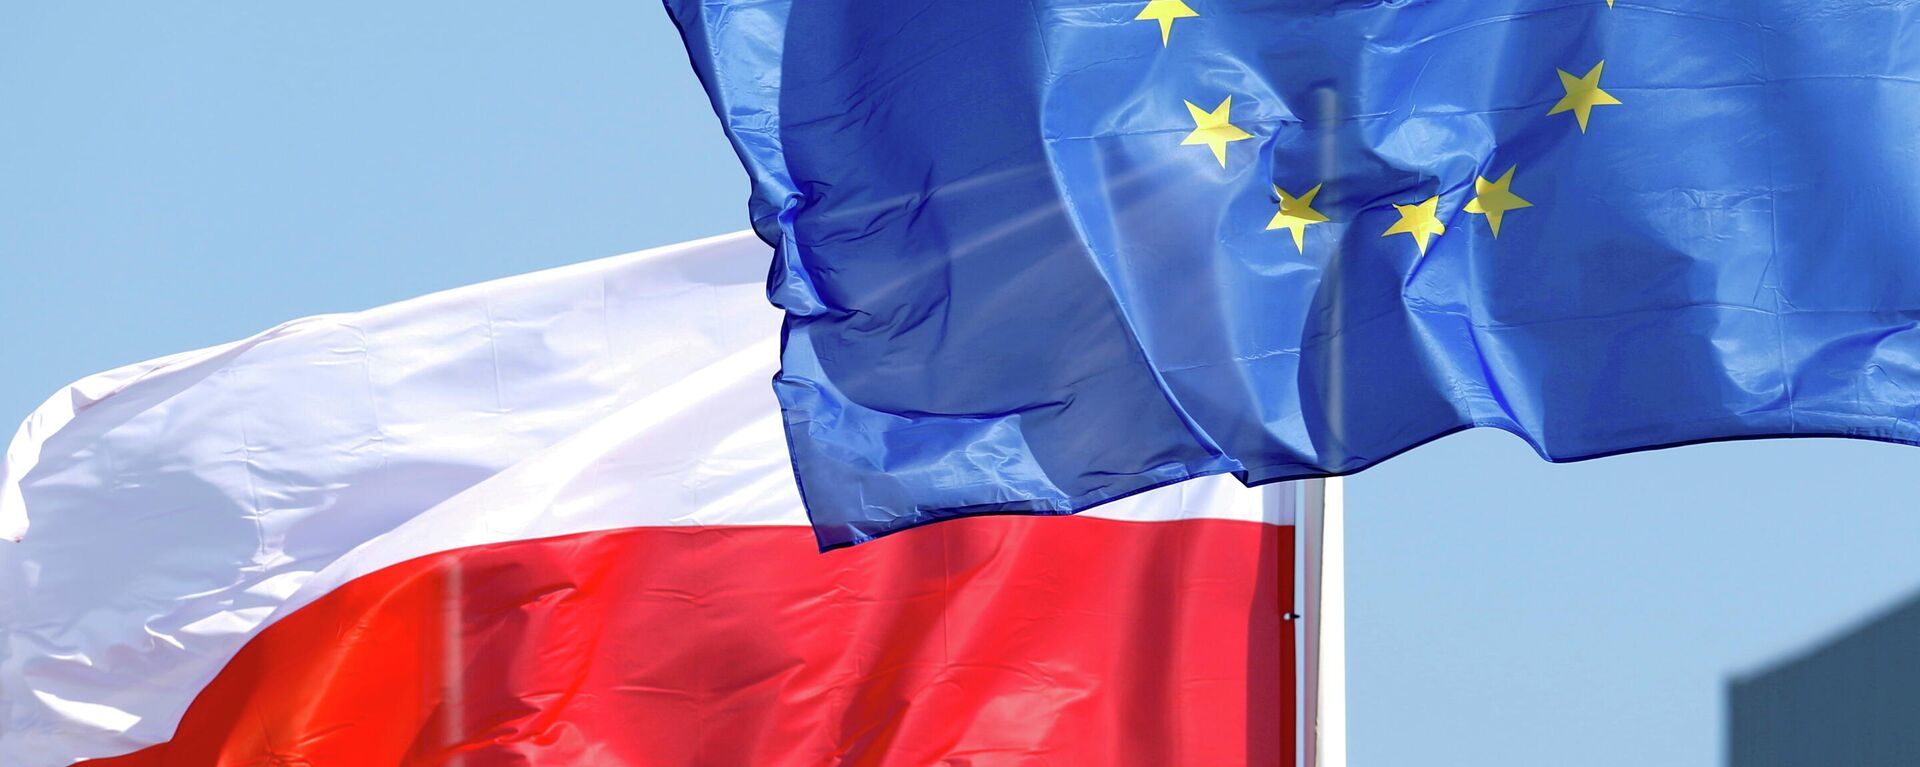 Banderas de Polonia y la UE - Sputnik Mundo, 1920, 28.10.2021